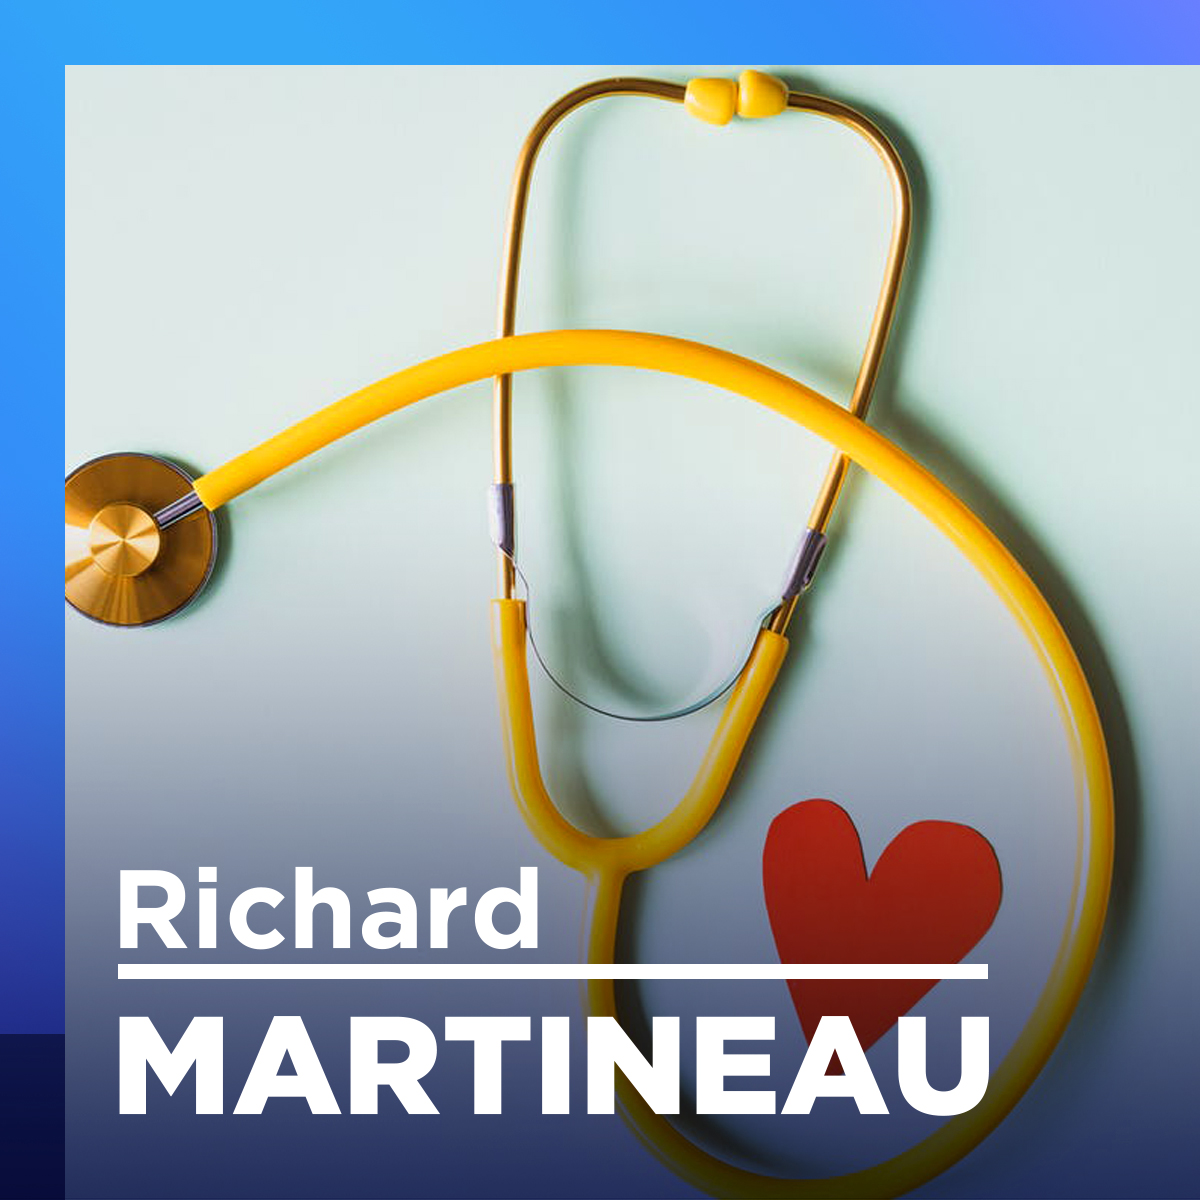 «Dans l’unité des soins intensifs, ils ont pas ben ben de fun», dit Martineau